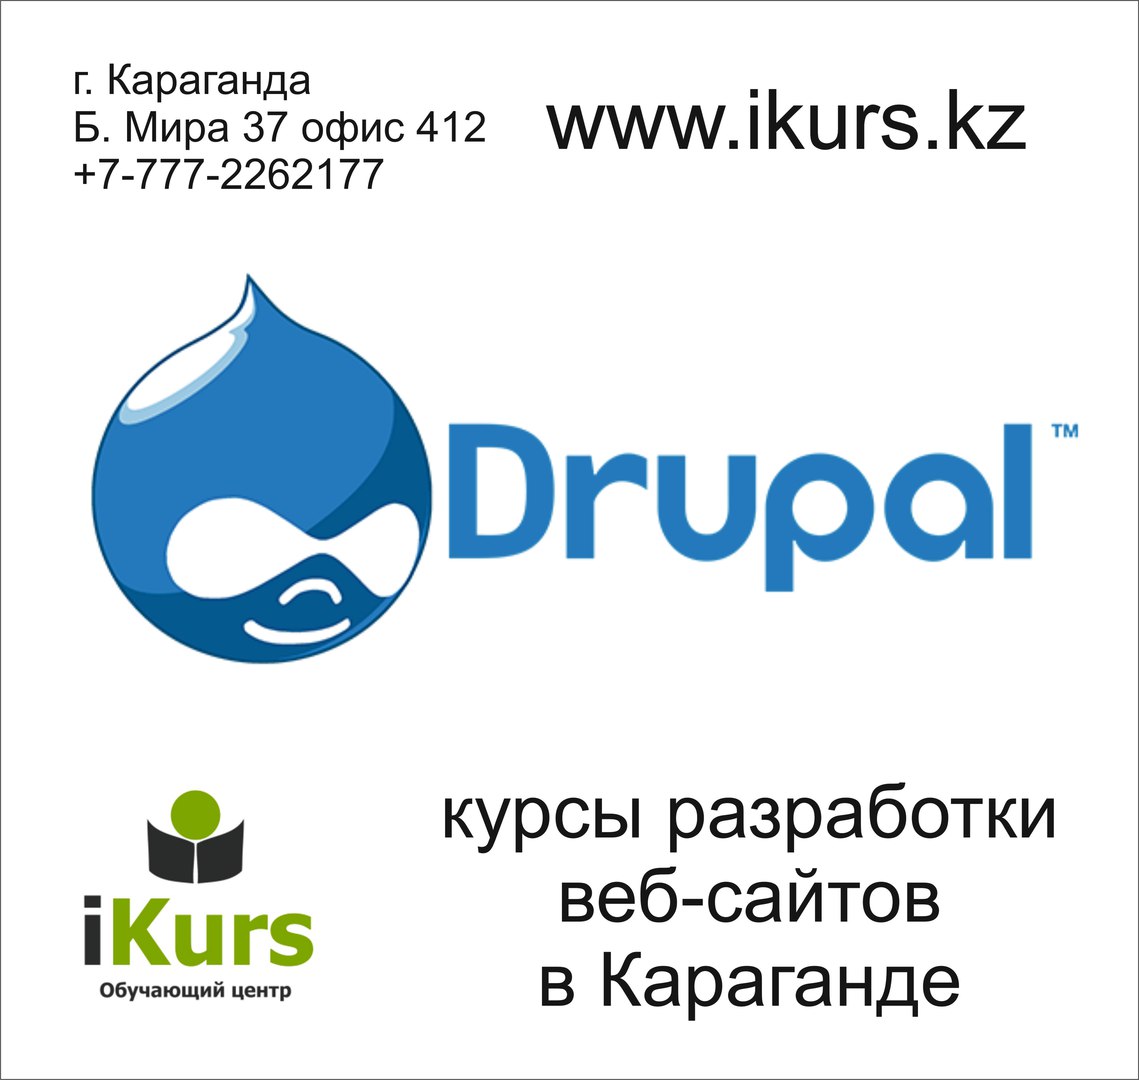 курсы по созданию сайтов на движке Drupal в Караганде. Обучающий центр Ikurs